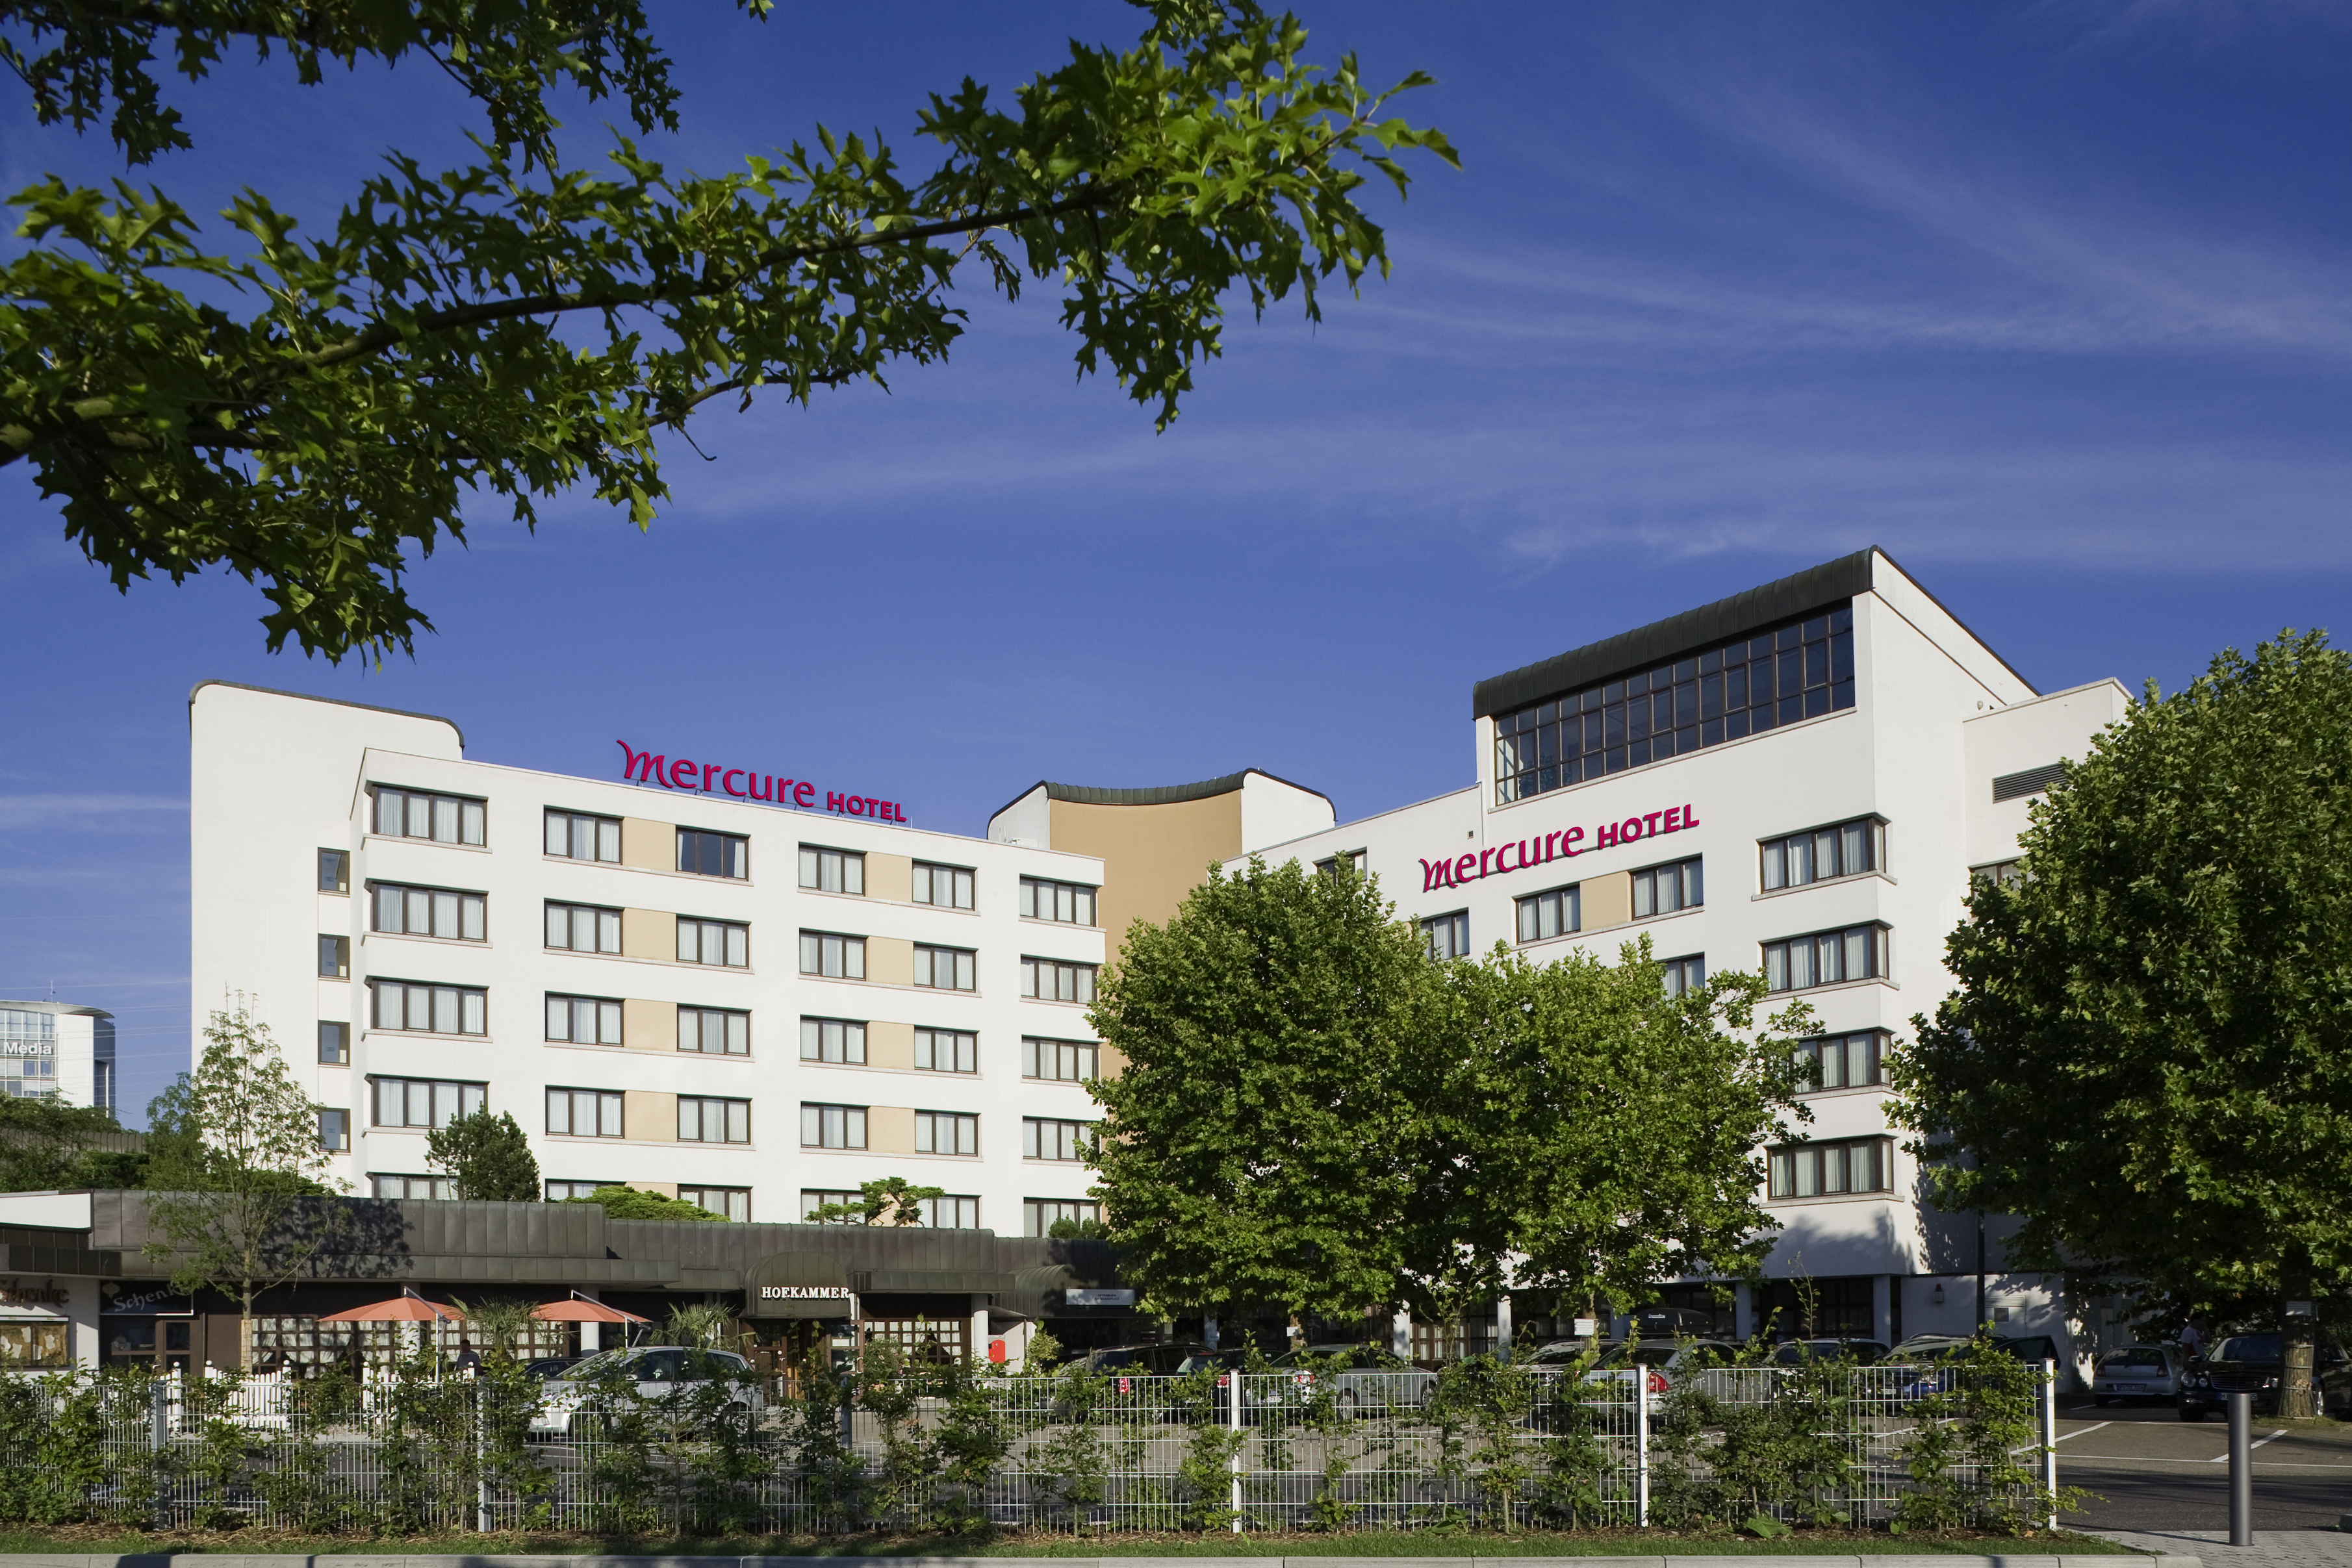 Mercure Hotel Offenburg am Messeplatz in Offenburg bei Friesenheim